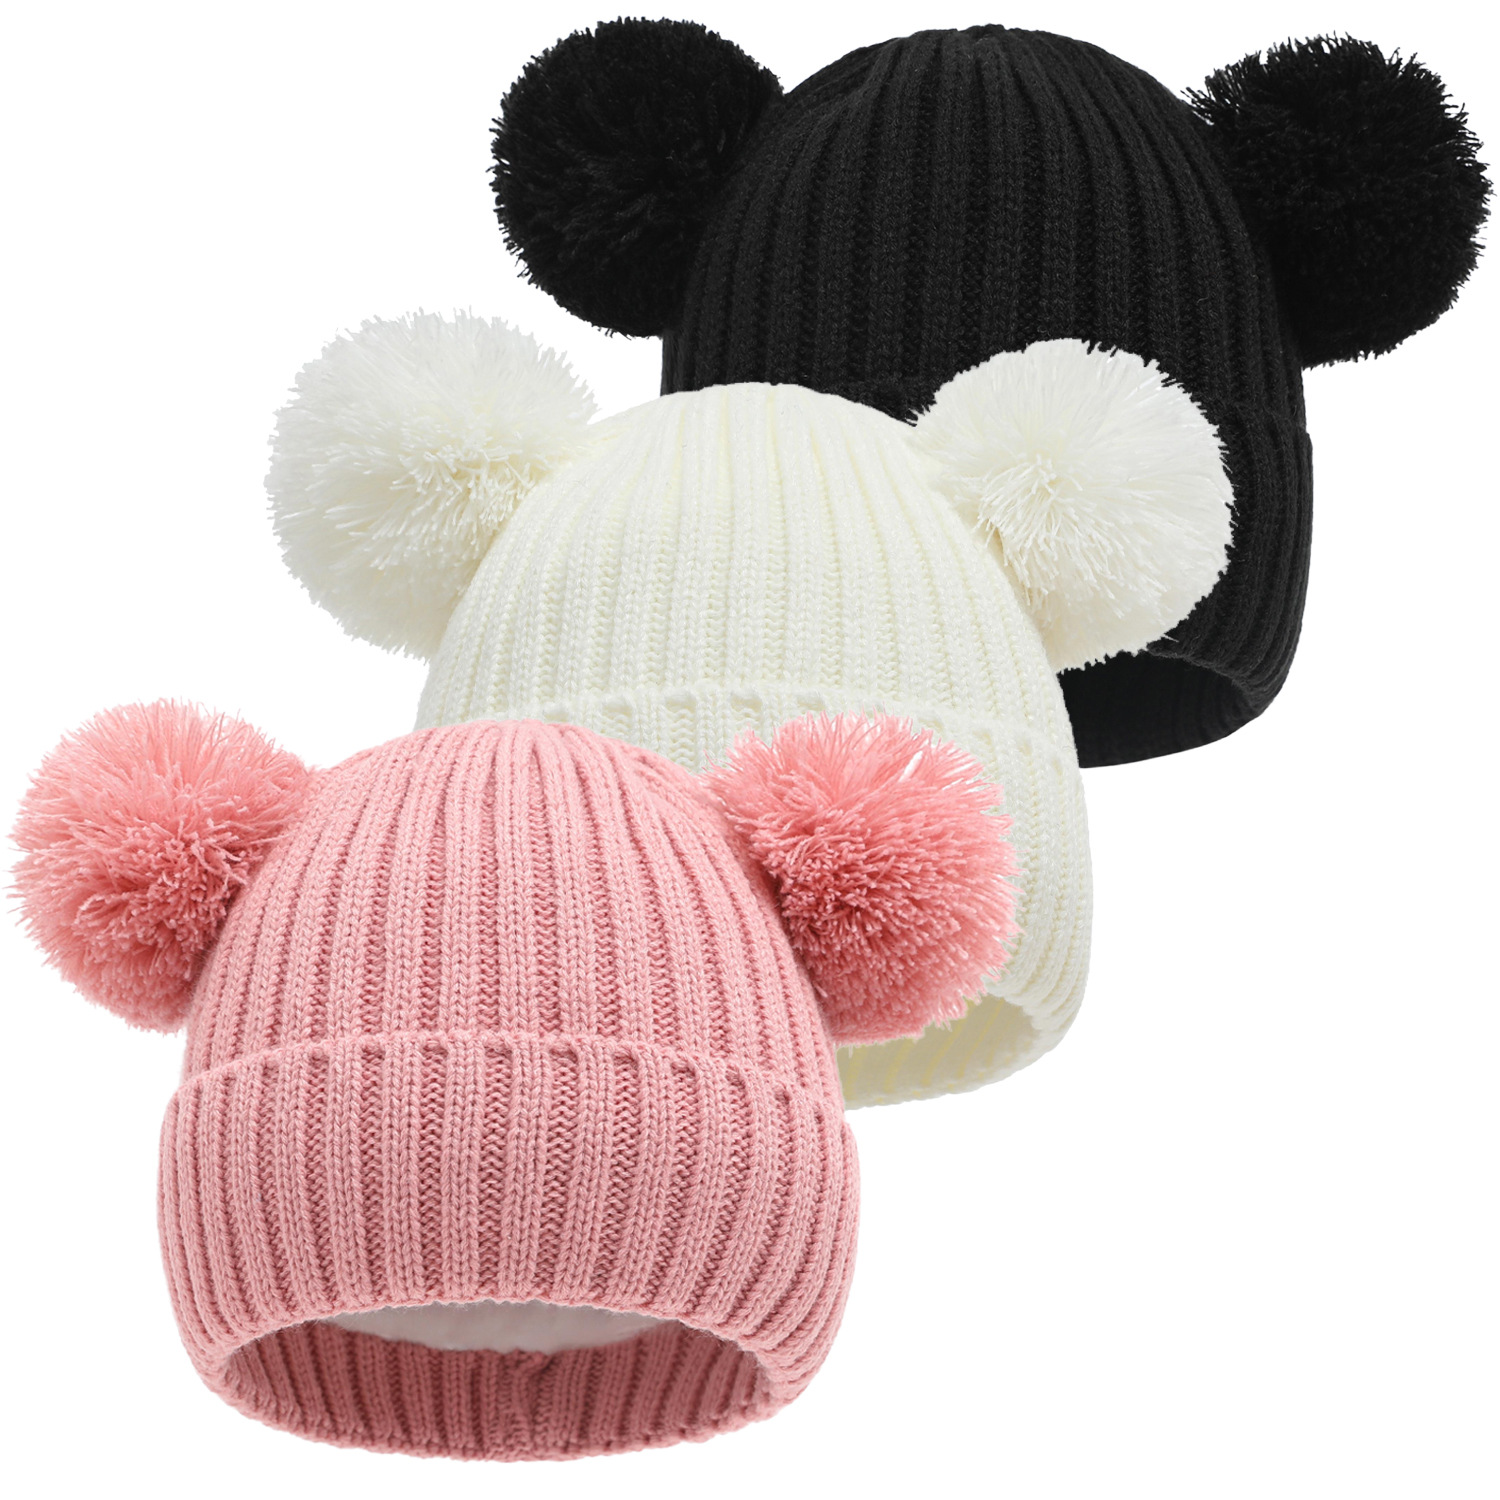 新款儿童针织帽子冬帽毛球可爱彩虹混色双球加绒 跨境电商工厂